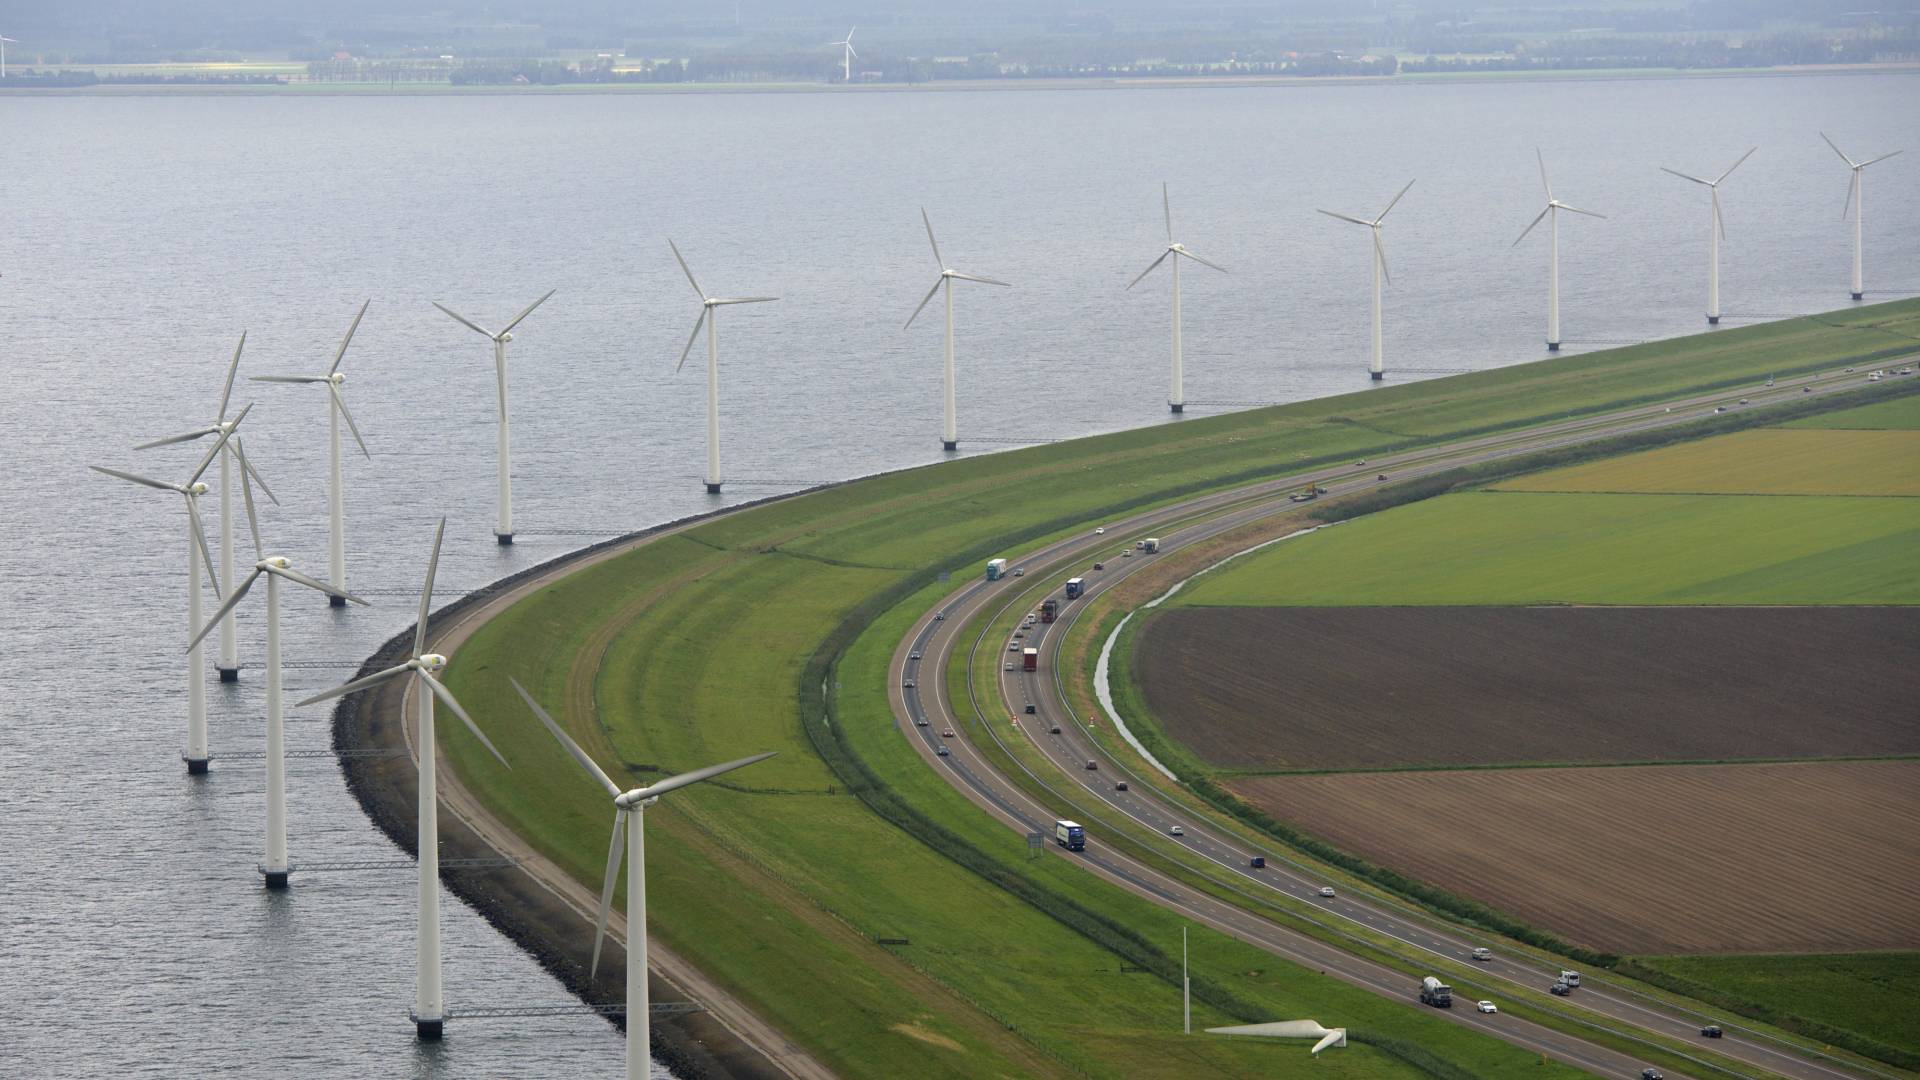 تريد الحكومة الهولندية تأمين إحتياطها من الطاقة الكهربائية، خوفاً من نقص موارد الطاقة التقليدية في المستقبل